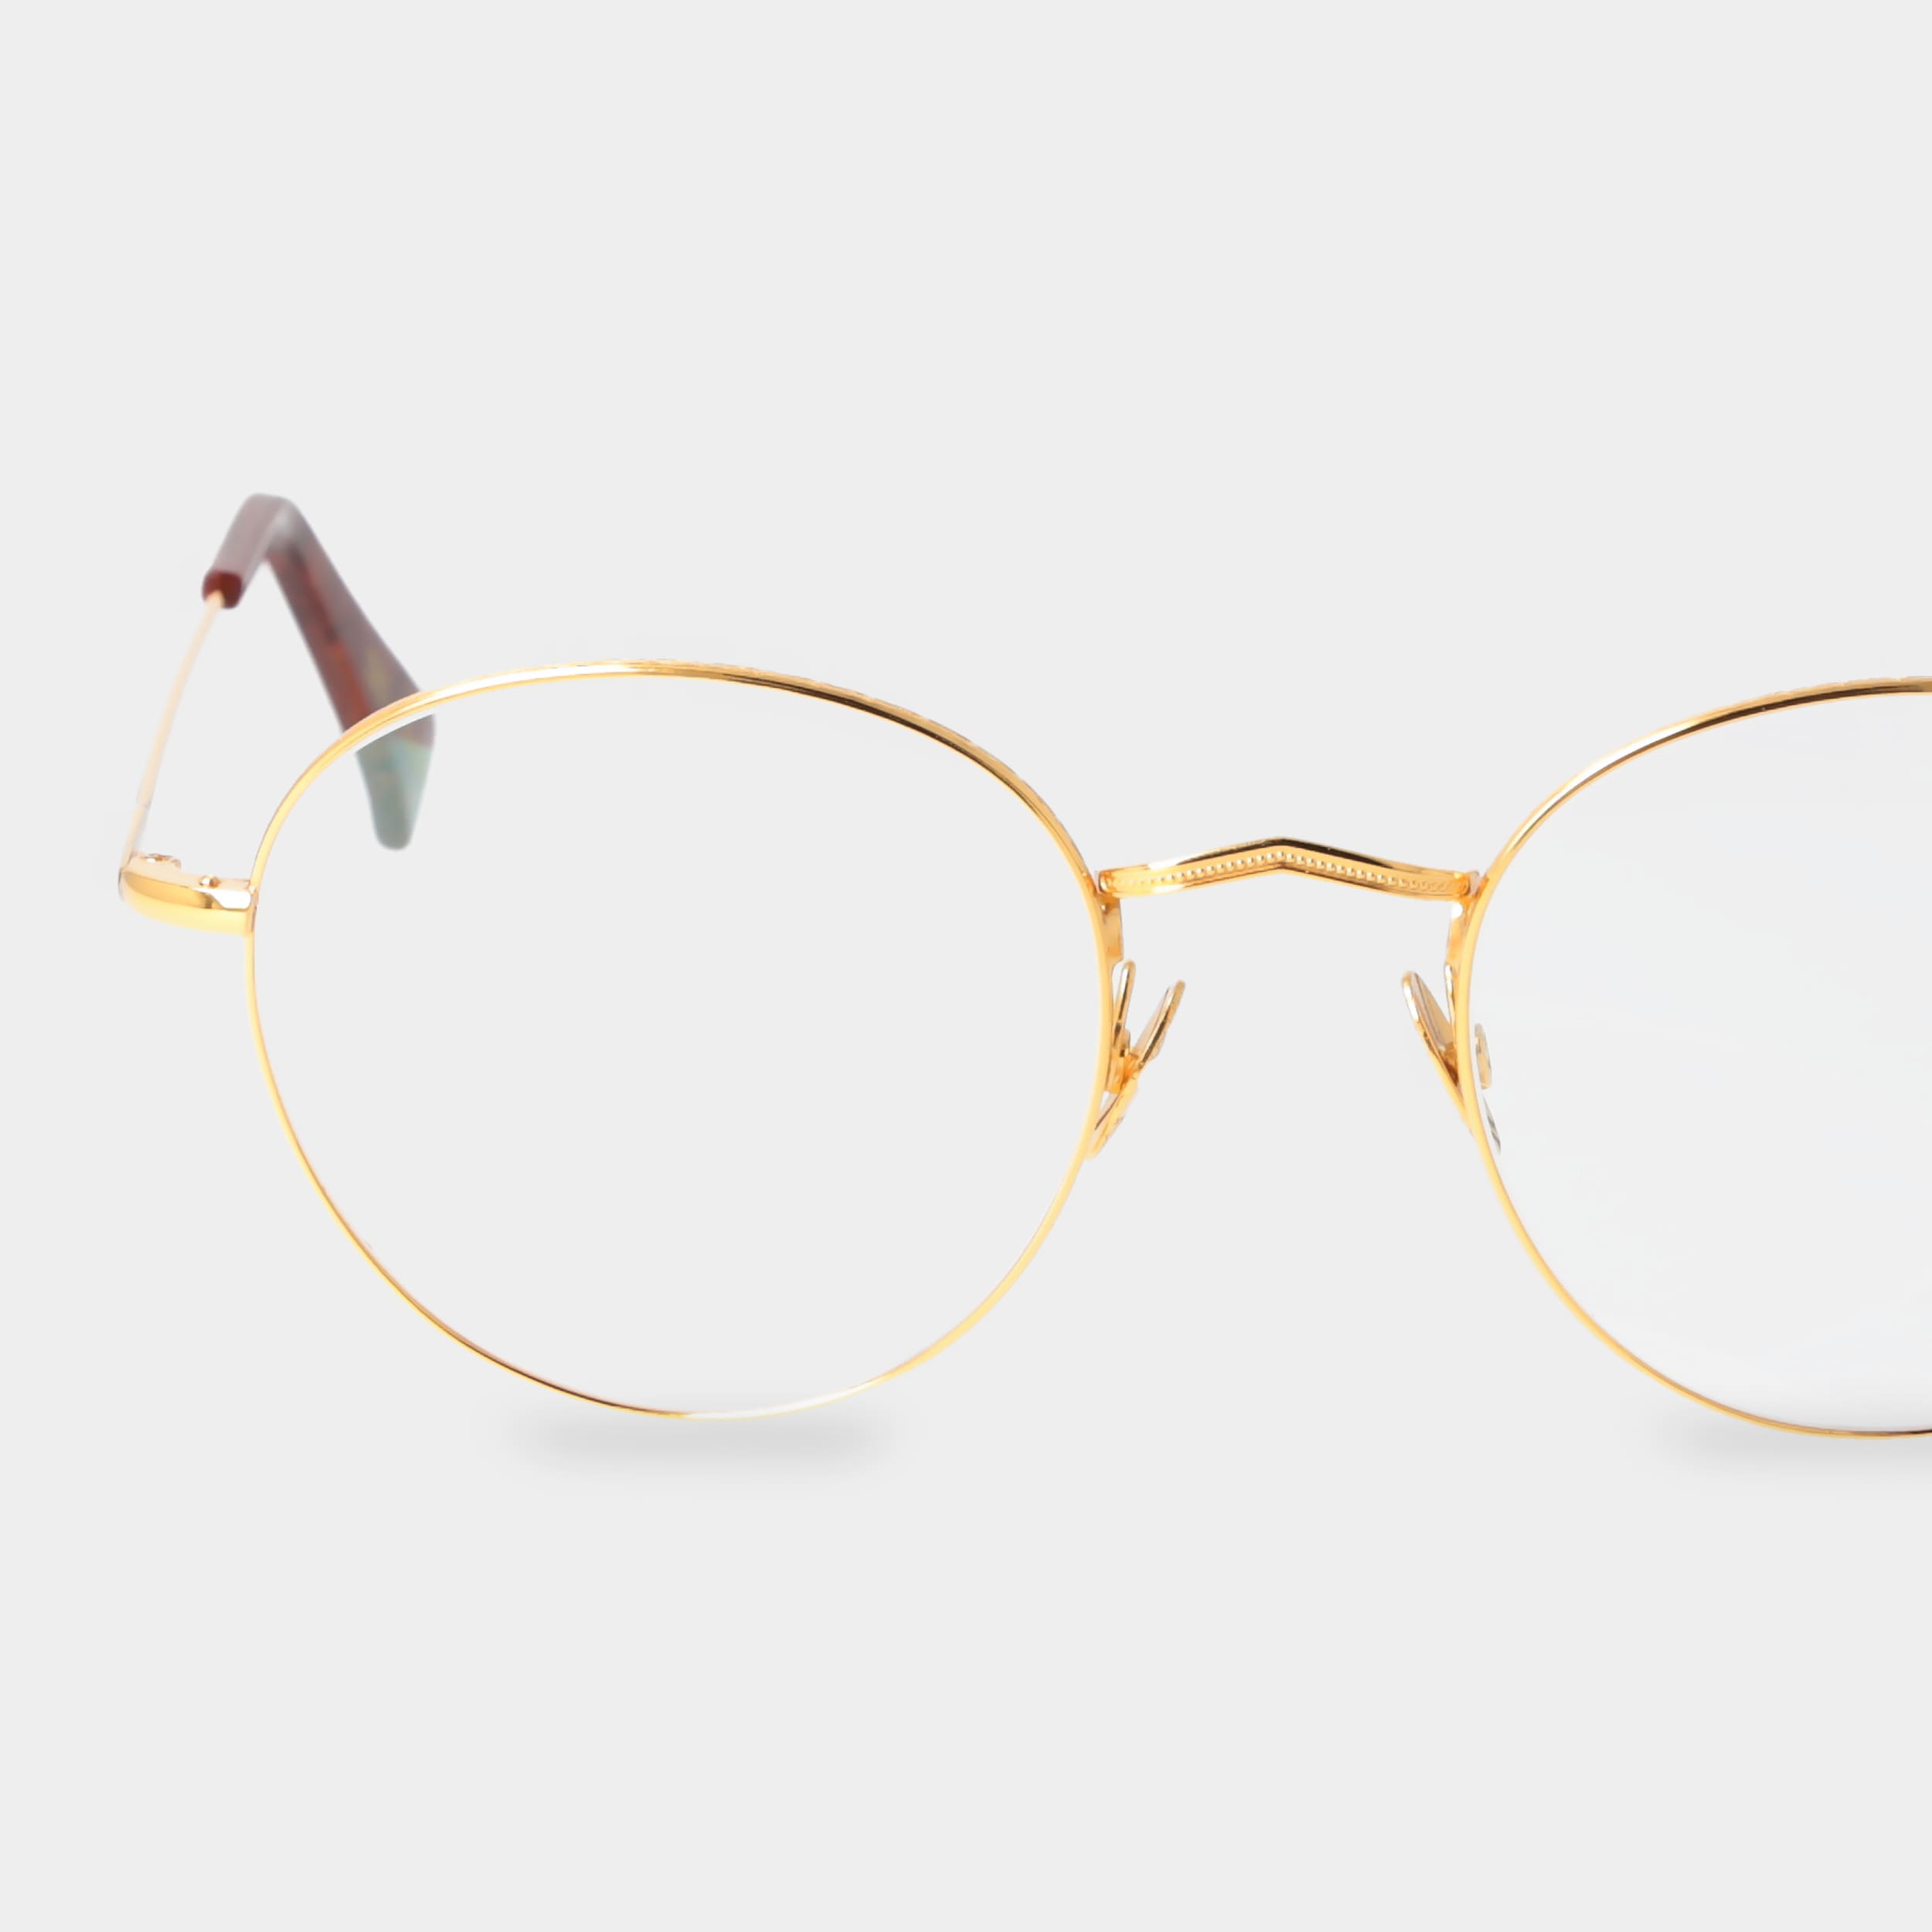 eyeglasses-vicuna-k-gold-optical-tbd-eyewear-lens